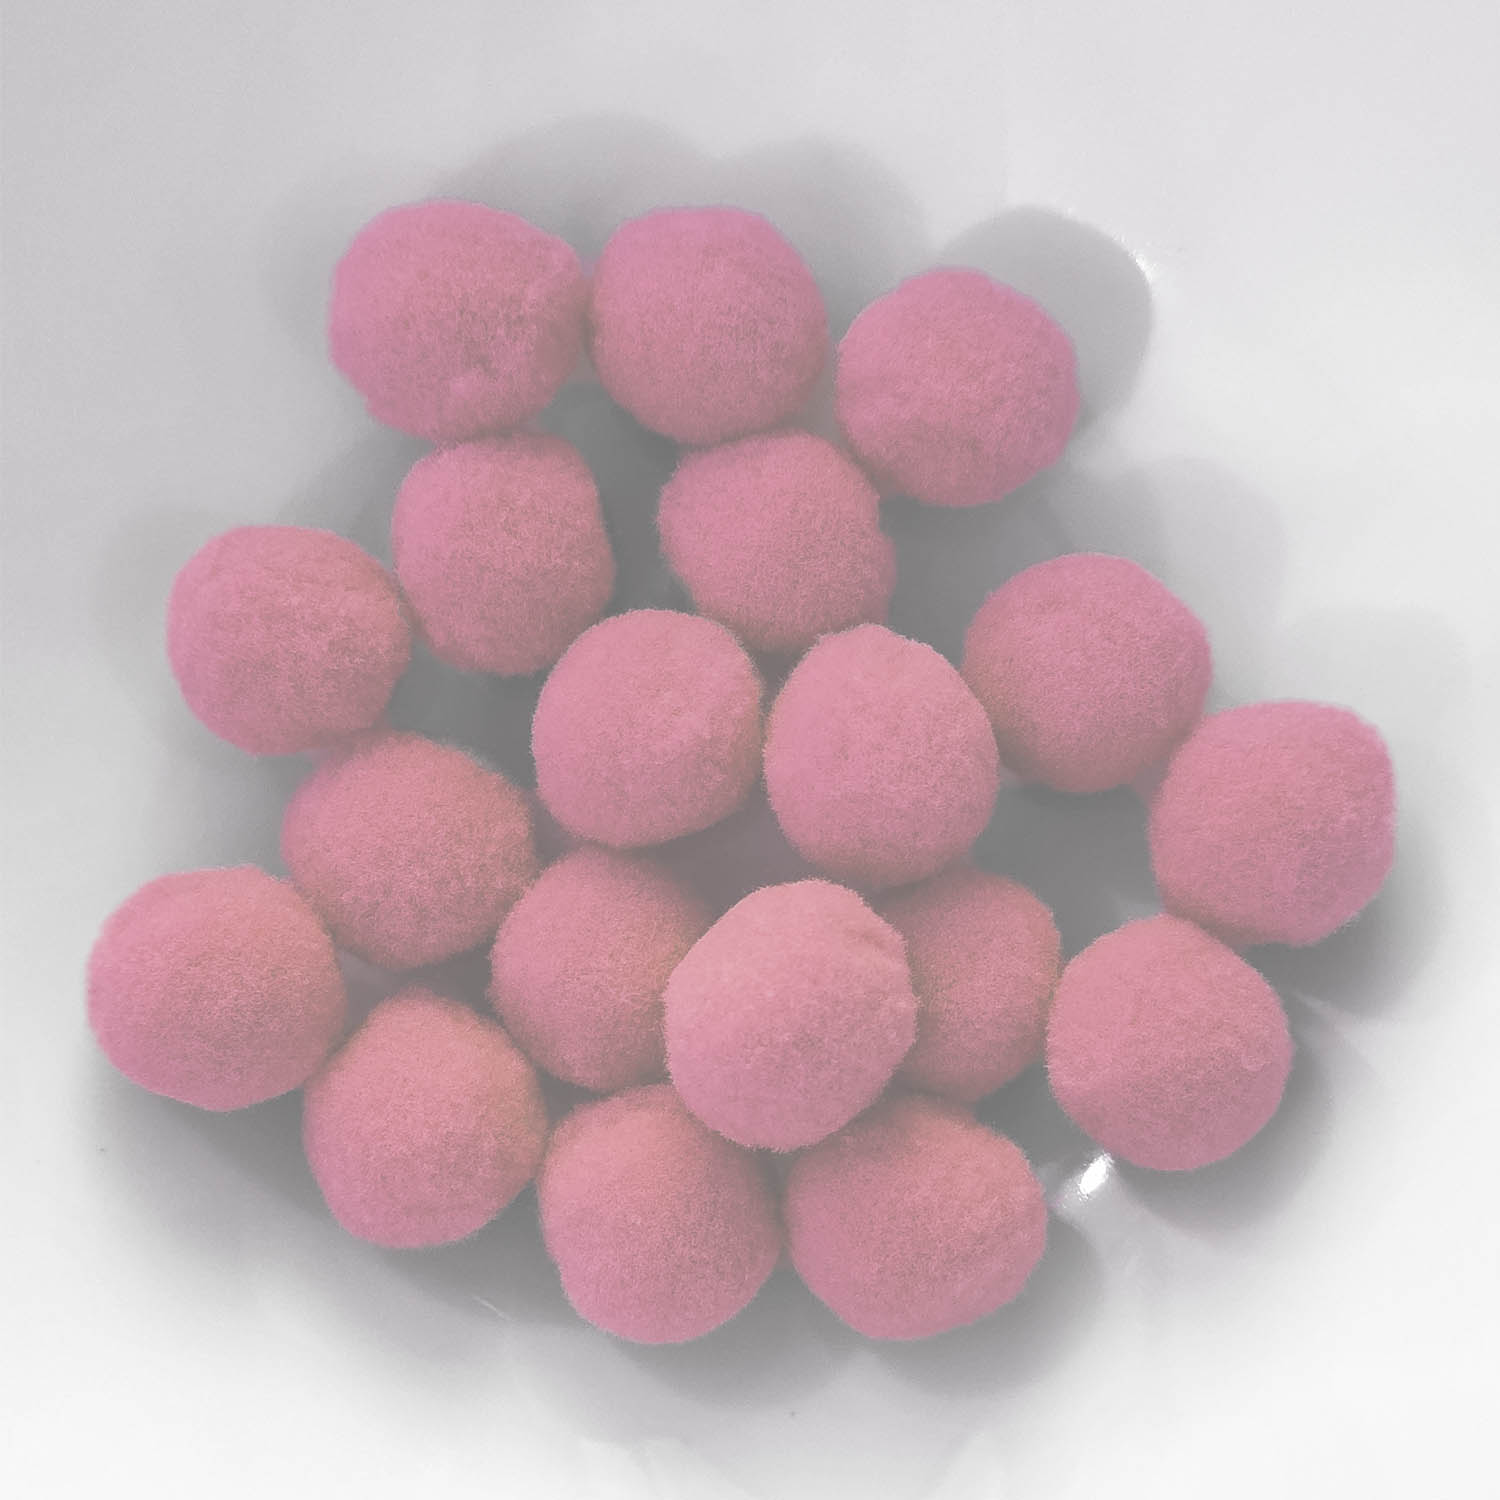 PomPon / Bälle aus Baumwolle - 20 mm / 25er Set - Pink hell